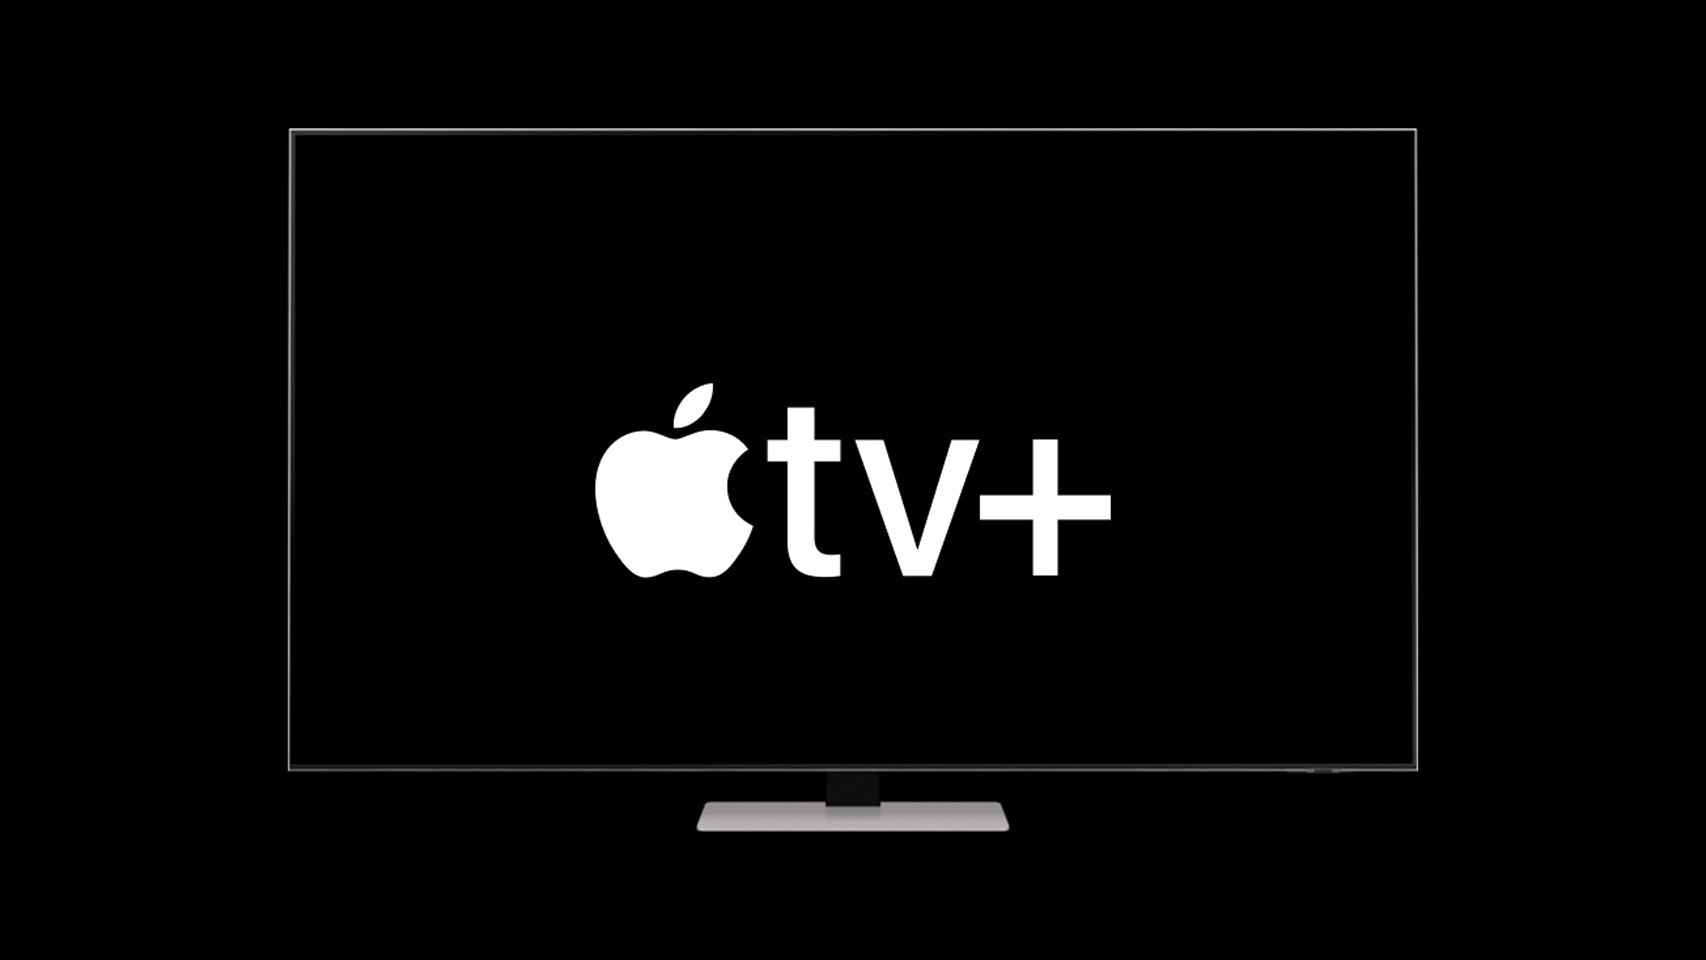 Fotomontaje con el logo de Apple TV+ y un televisor Samsung.